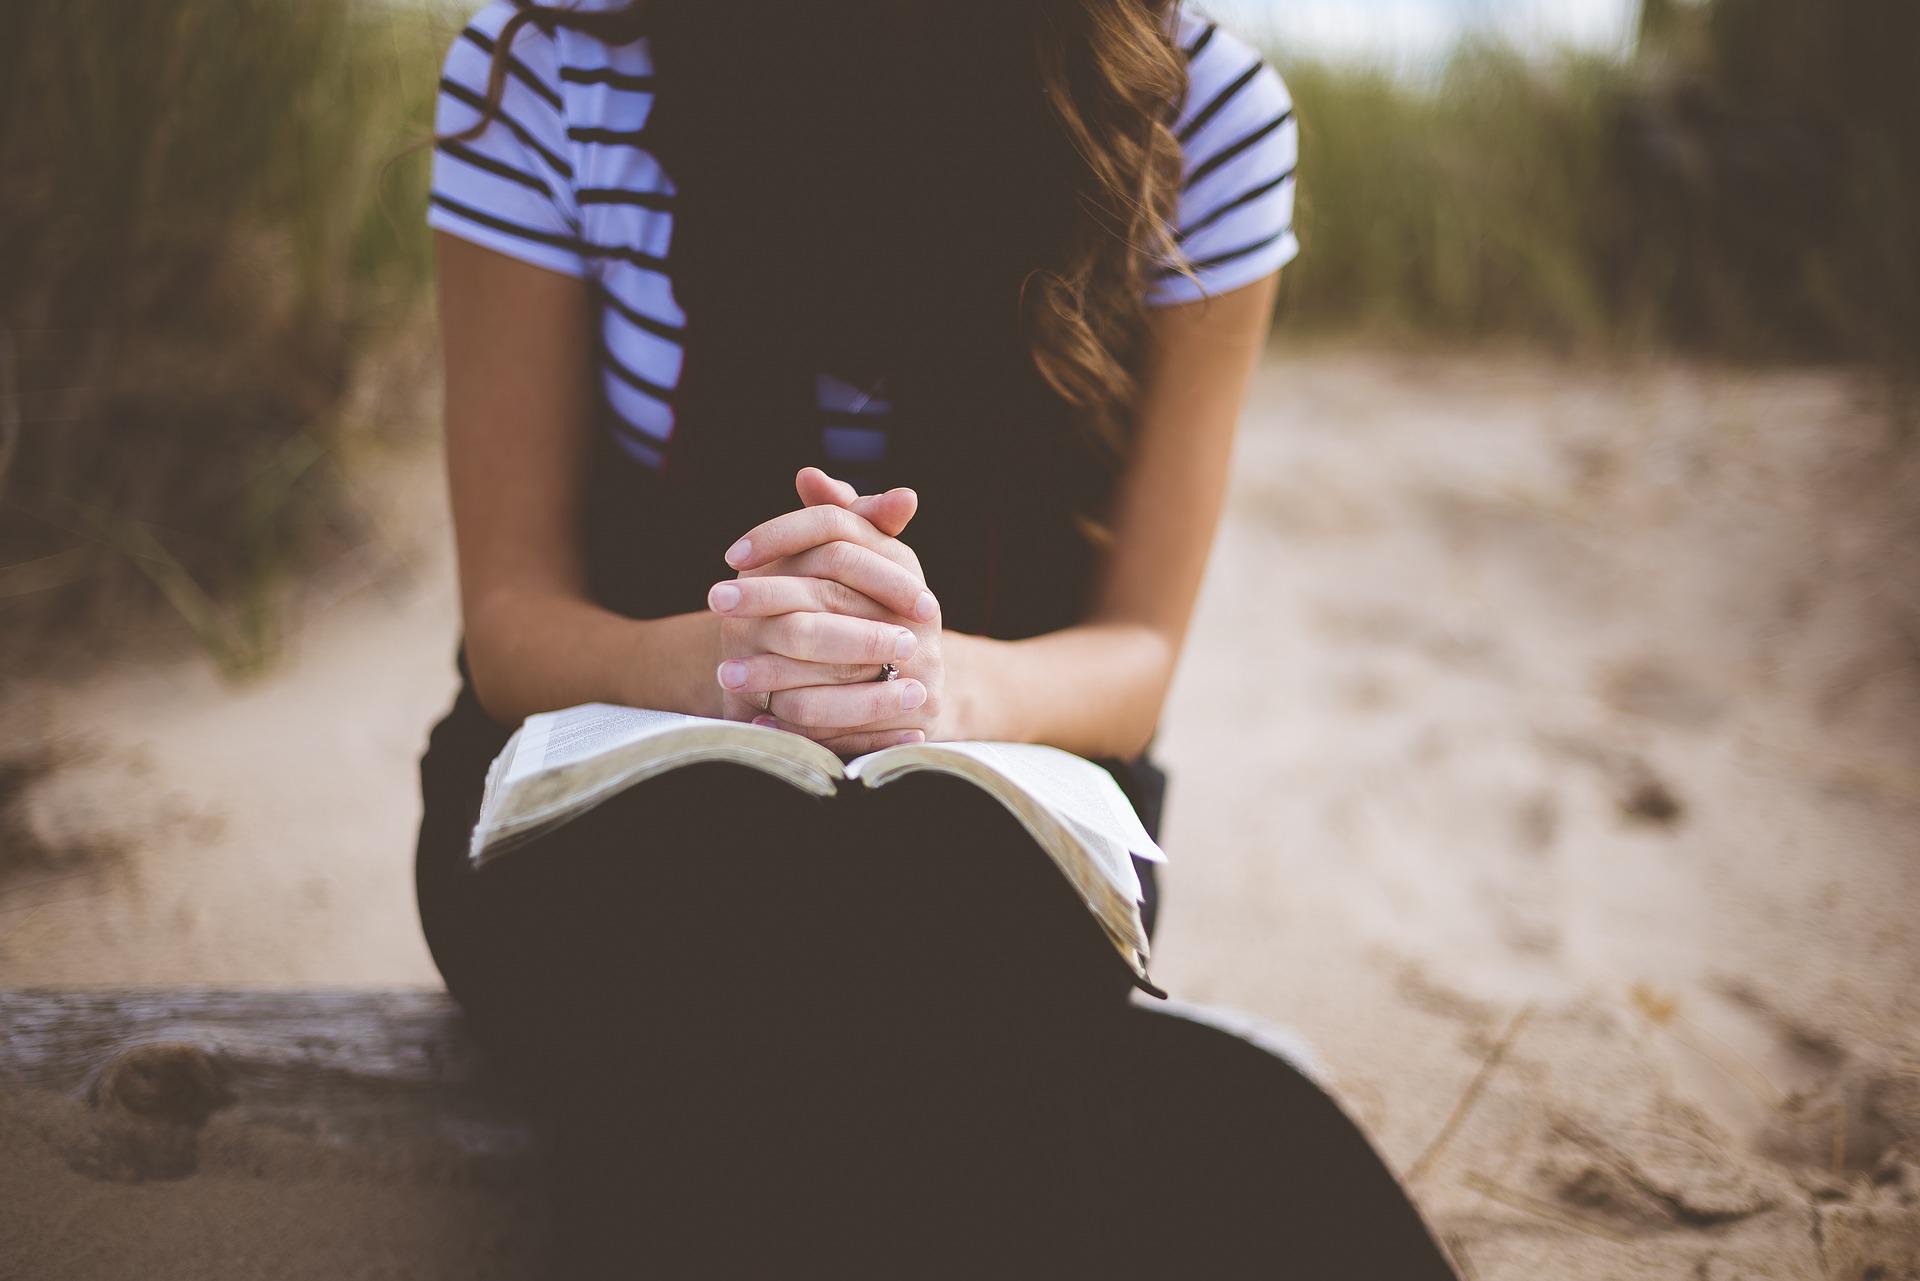 כל אשת איש צריכה להכיר: אילו תפילות ביהדות קיימות לנשים?